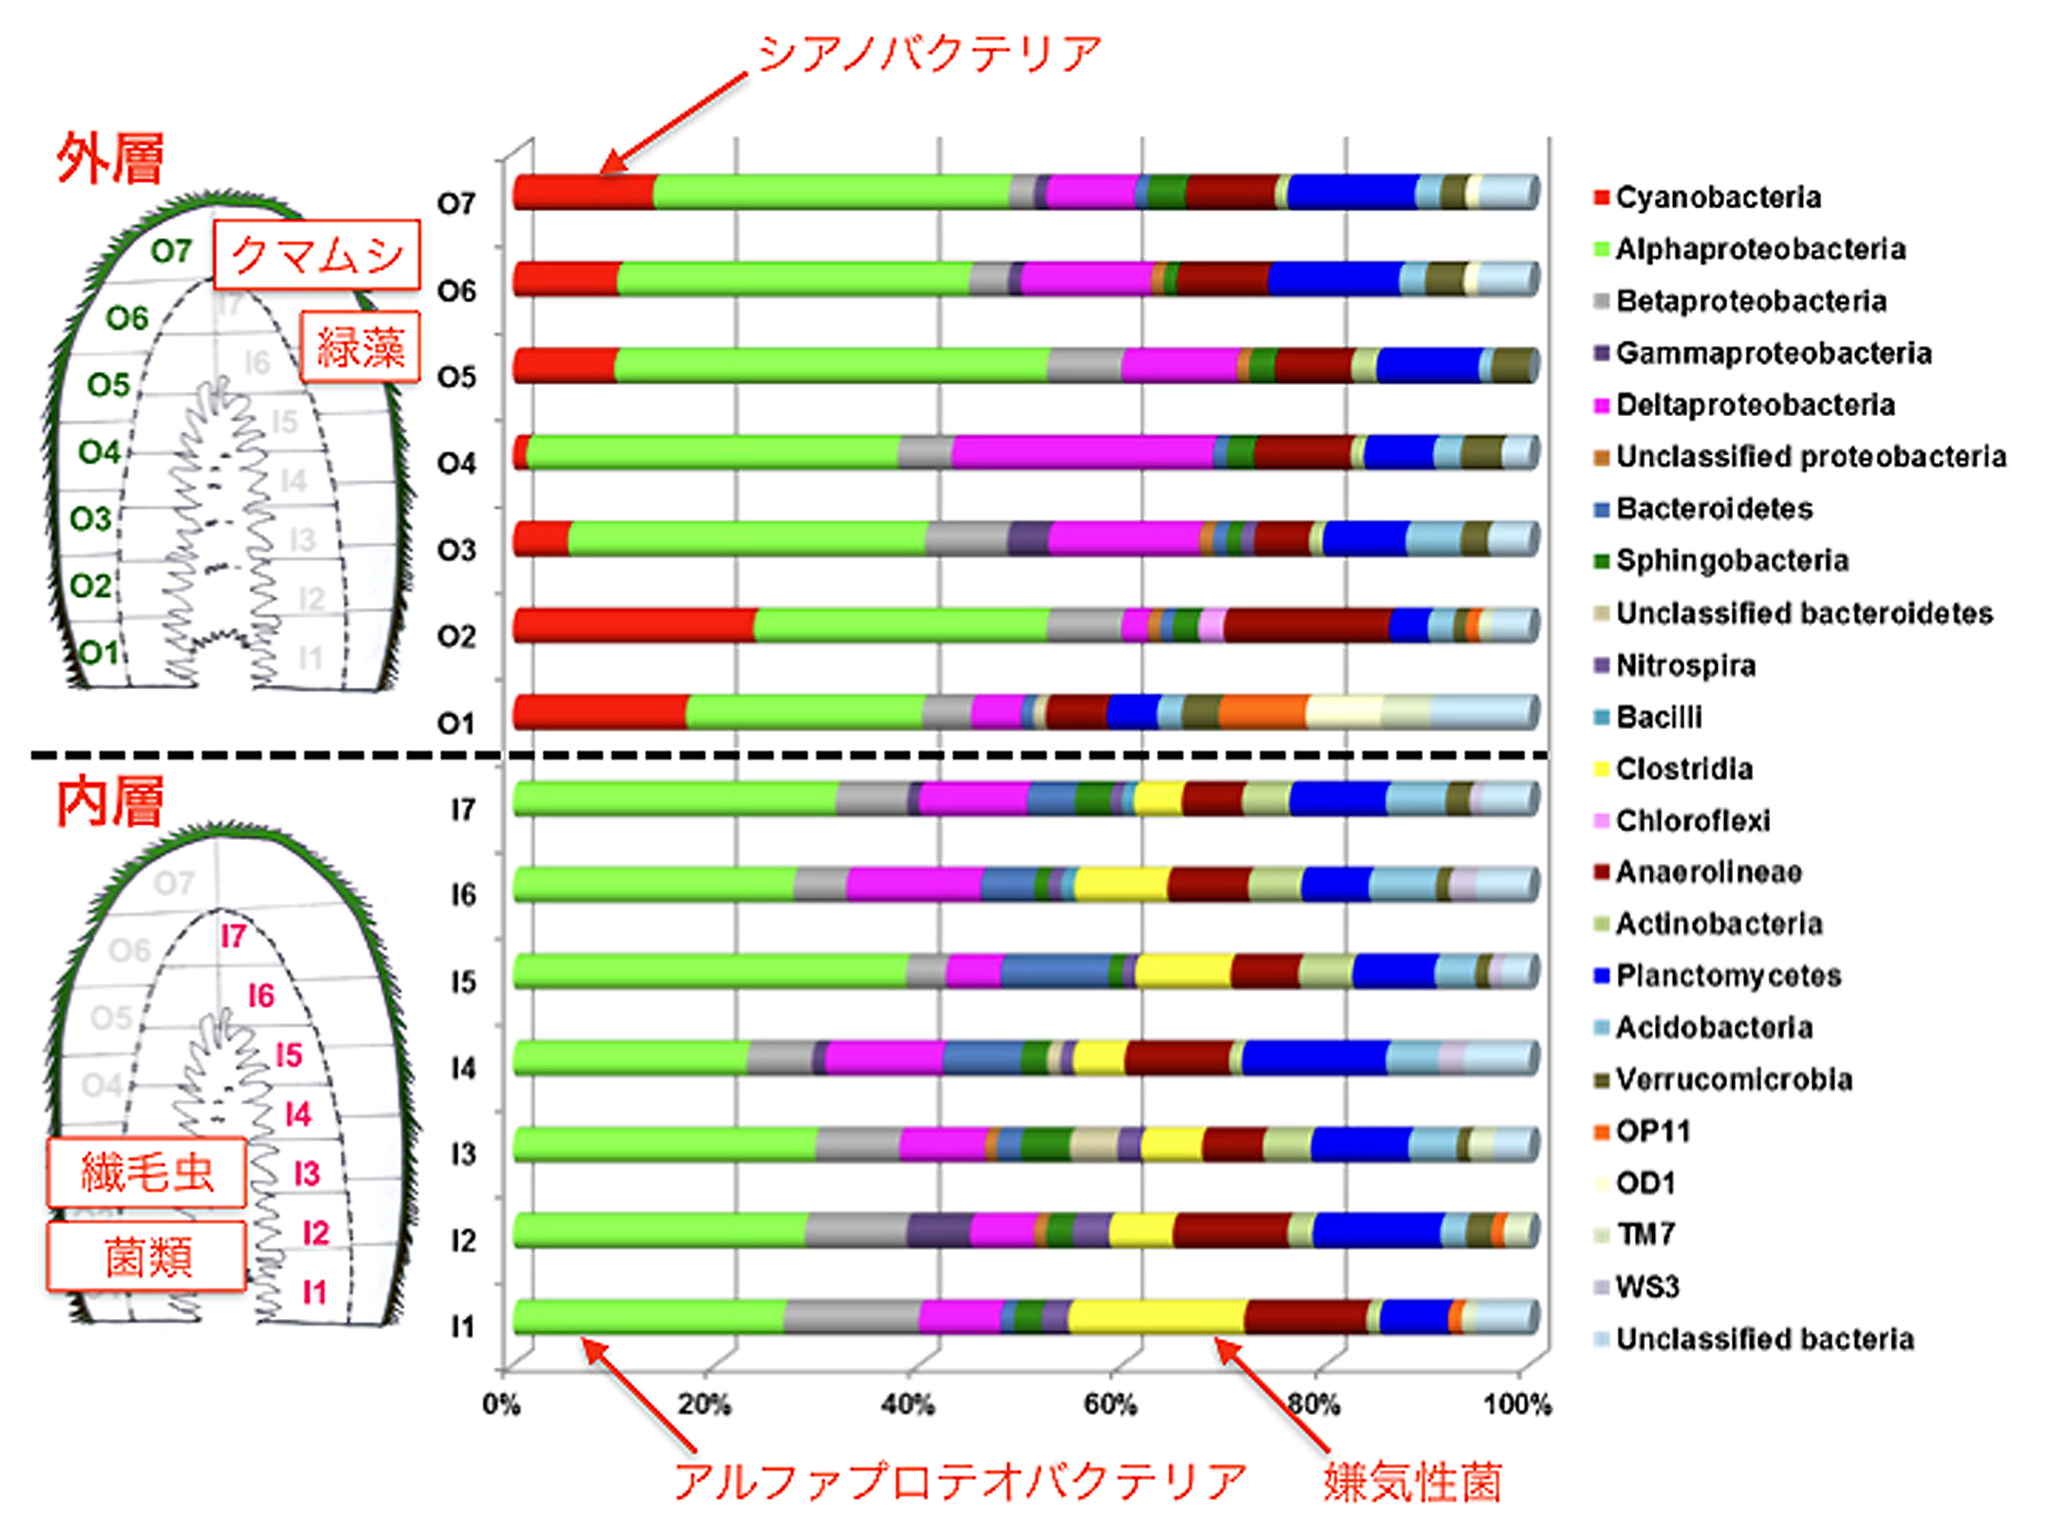 【図（グラフ）】コケ坊主の模式断面図・リボソームRNAの出現頻度